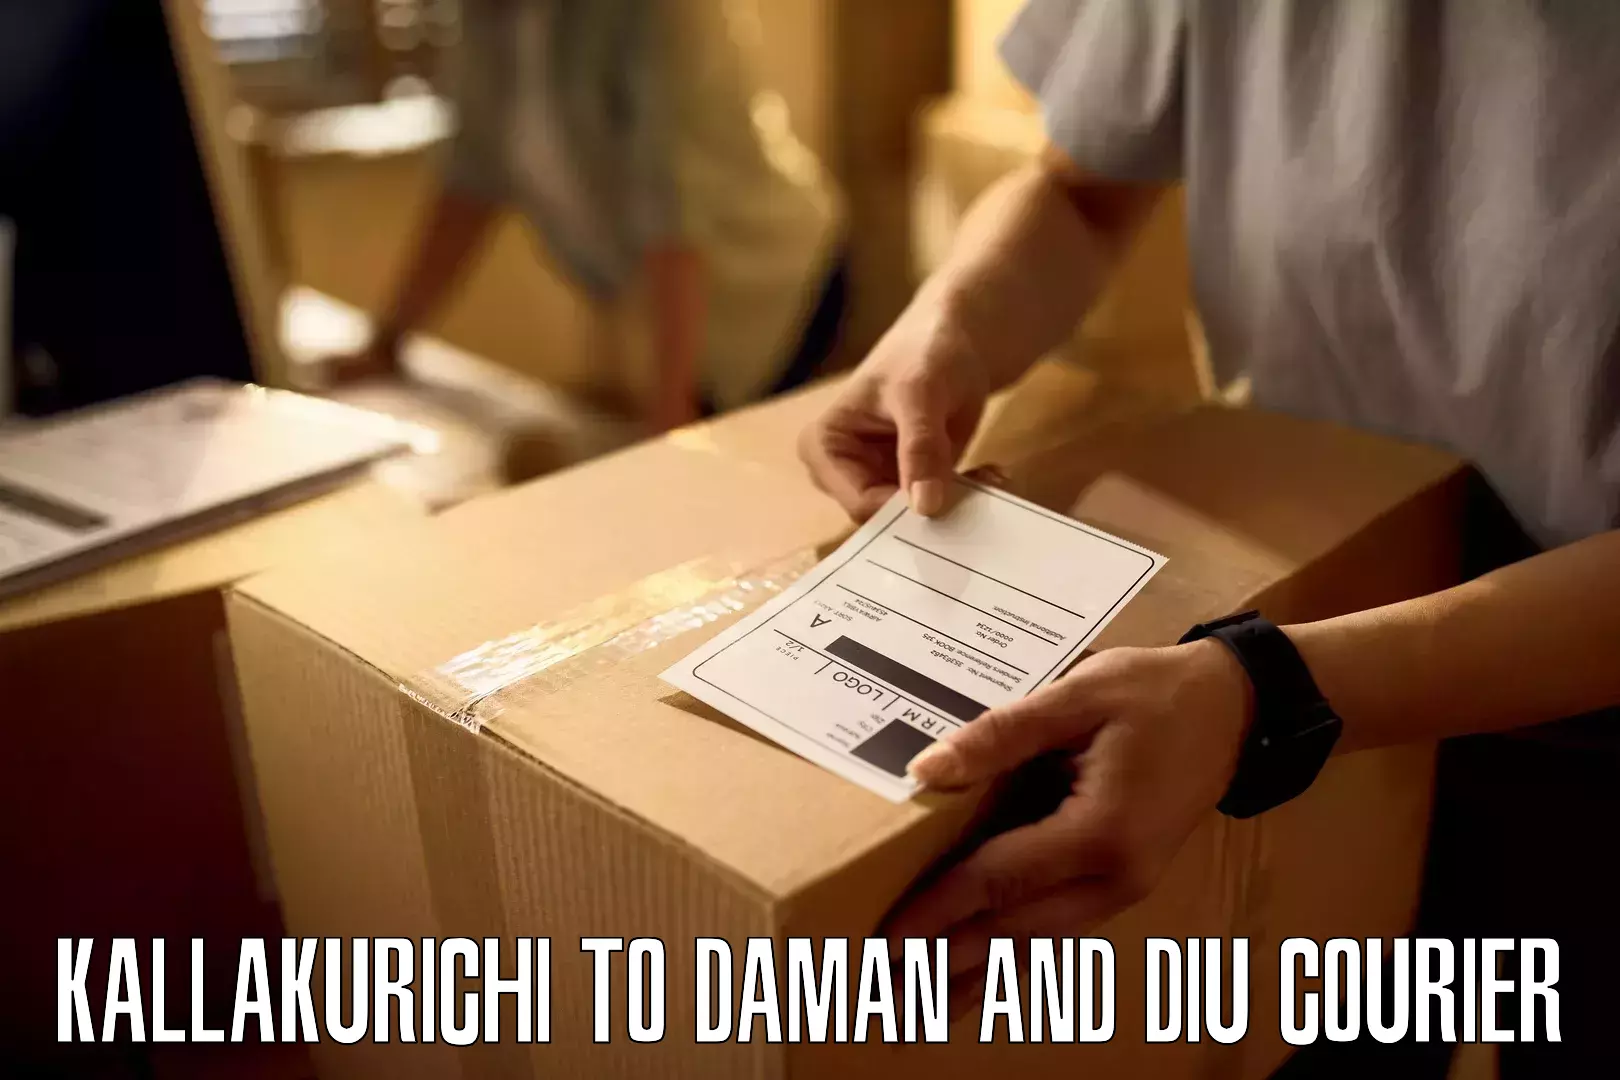 Door-to-door shipping Kallakurichi to Diu